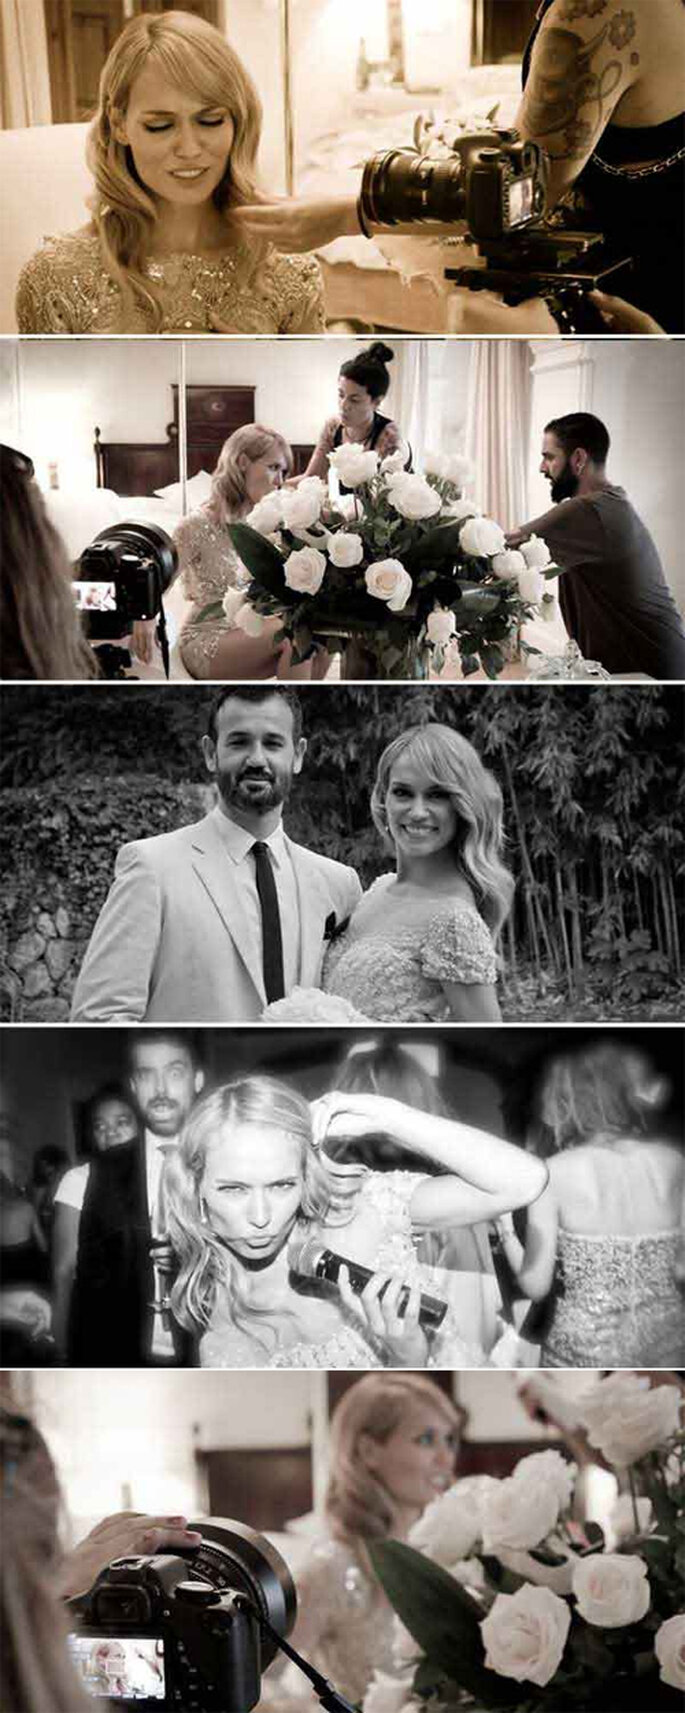 Las fotos de la boda nos dejan ver un poquito más de los vestidos de la novia, así como del maquillaje y el peinado. Foto: hola.com